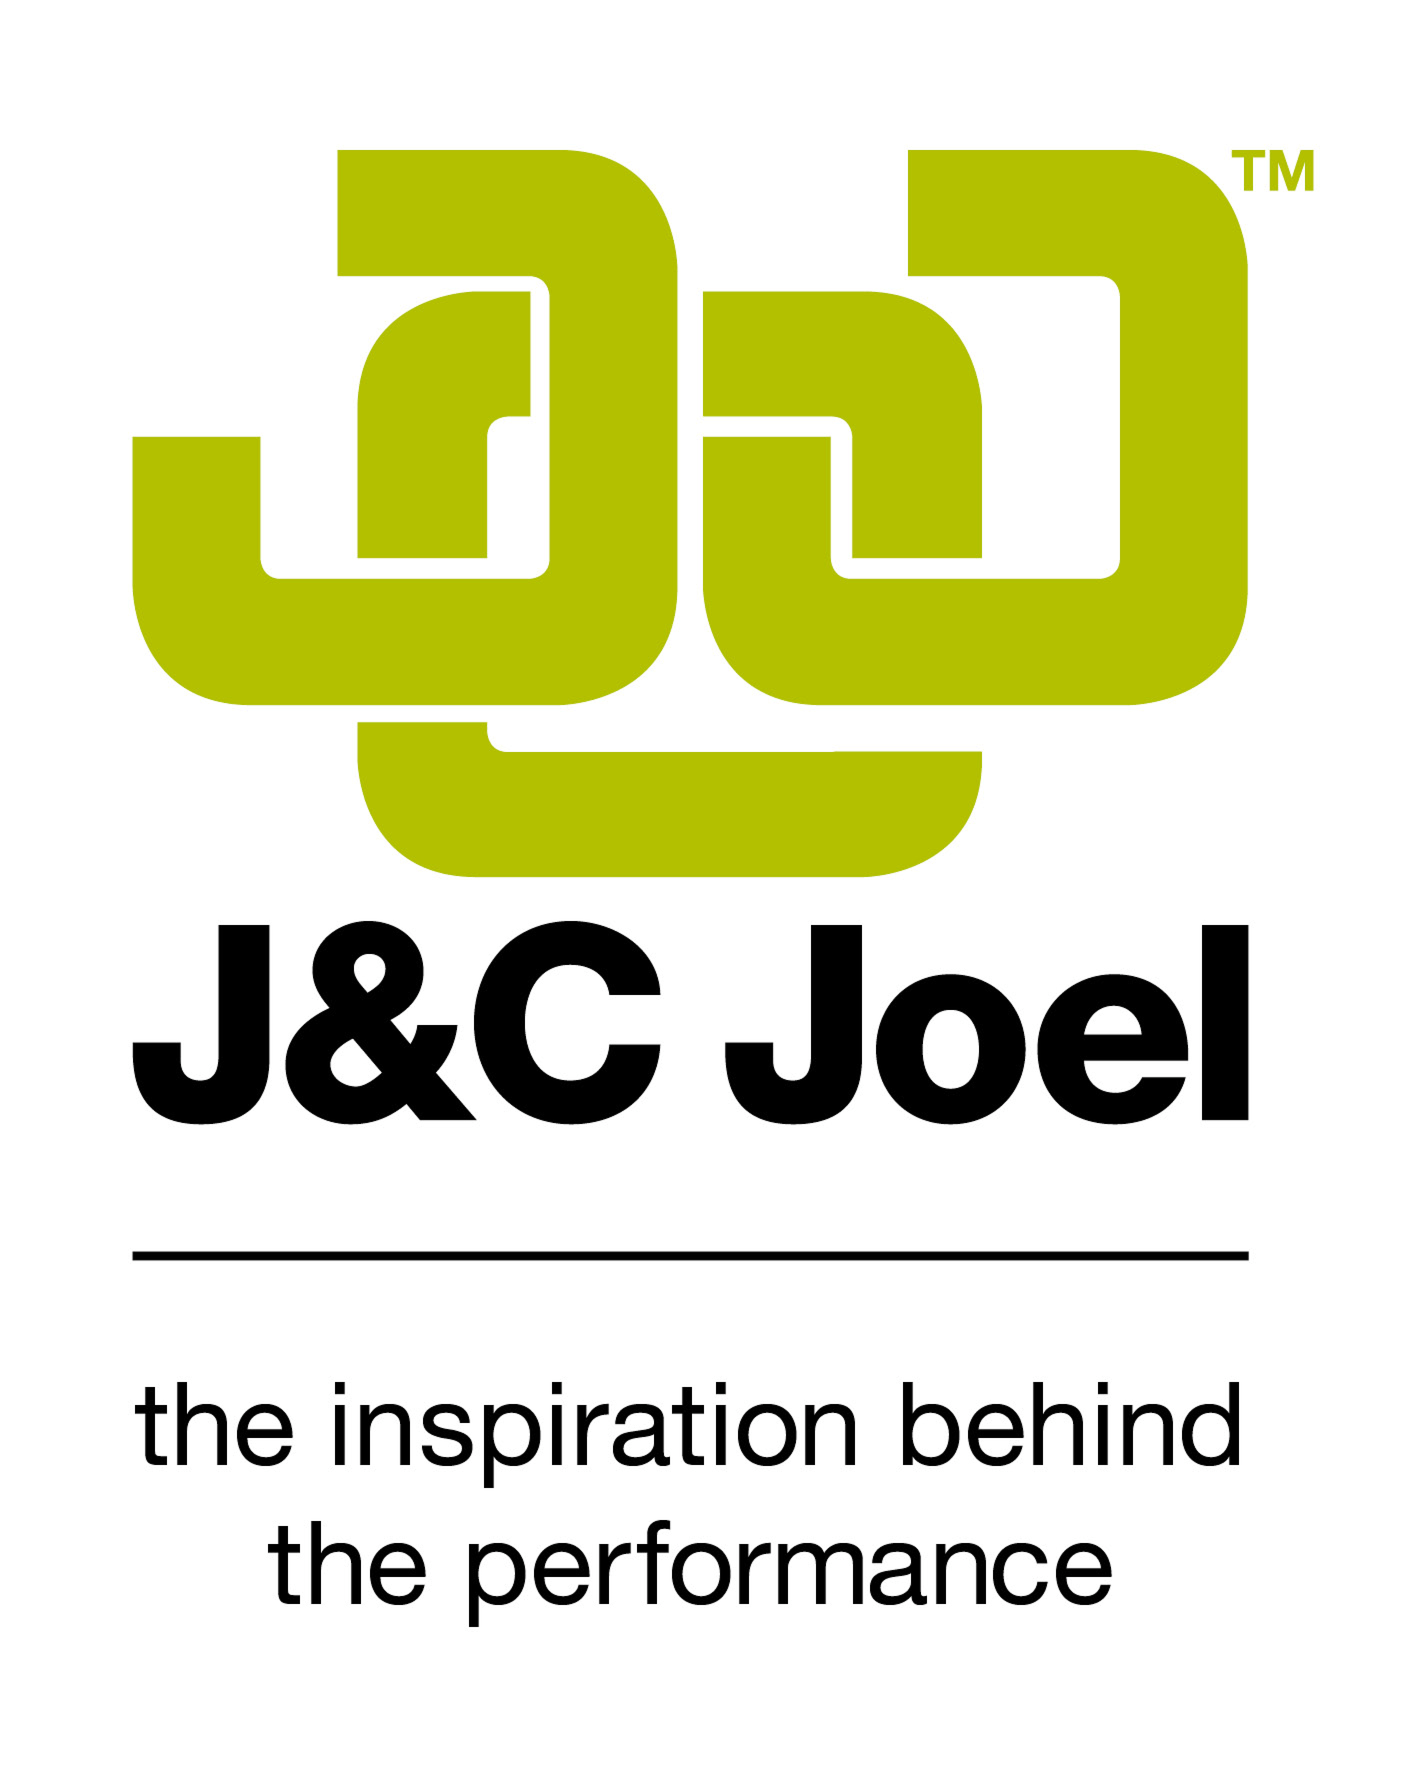 J&C Joel Ltd